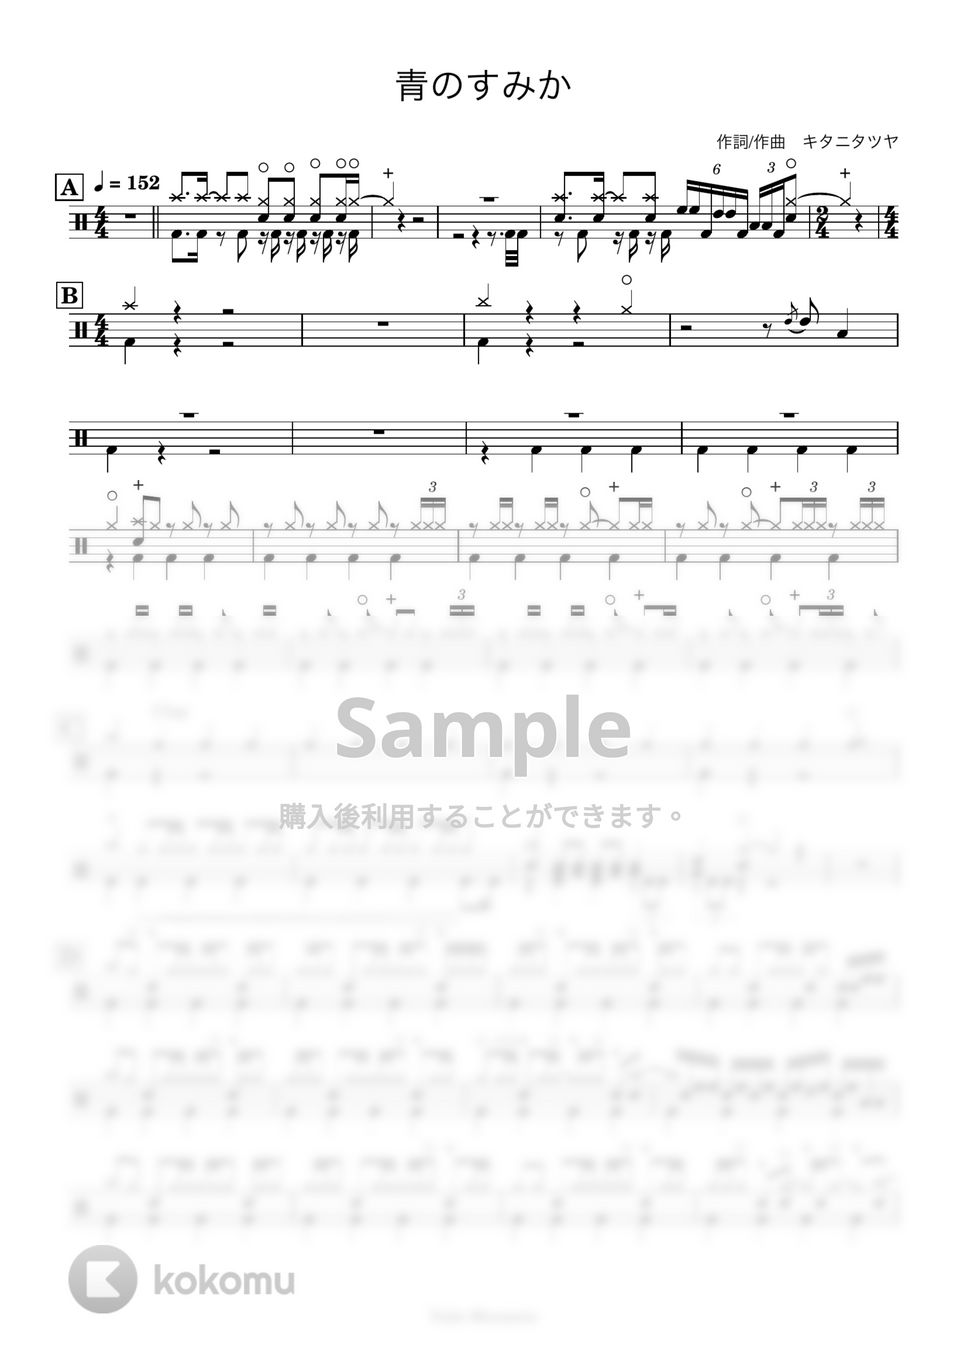 キタニタツヤ - 【ドラム譜】青のすみか【完コピ】 by Taiki Mizumoto